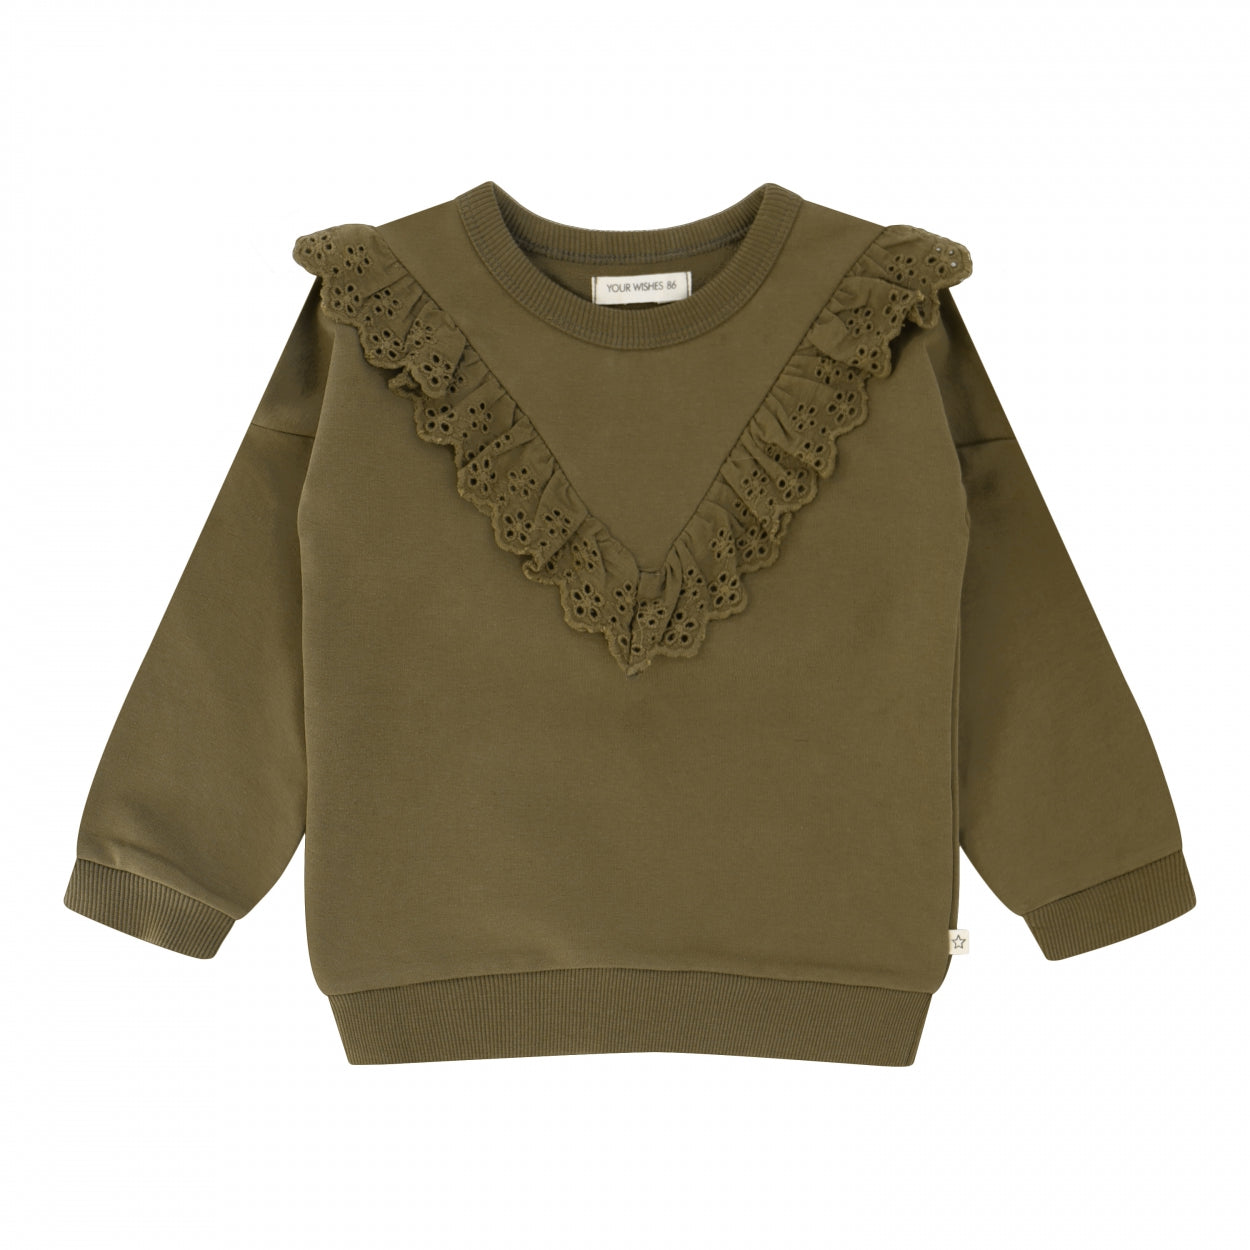 Meisjes Sweater Solid | Dorith van Your Wishes in de kleur Dark Olive in maat 134-140.